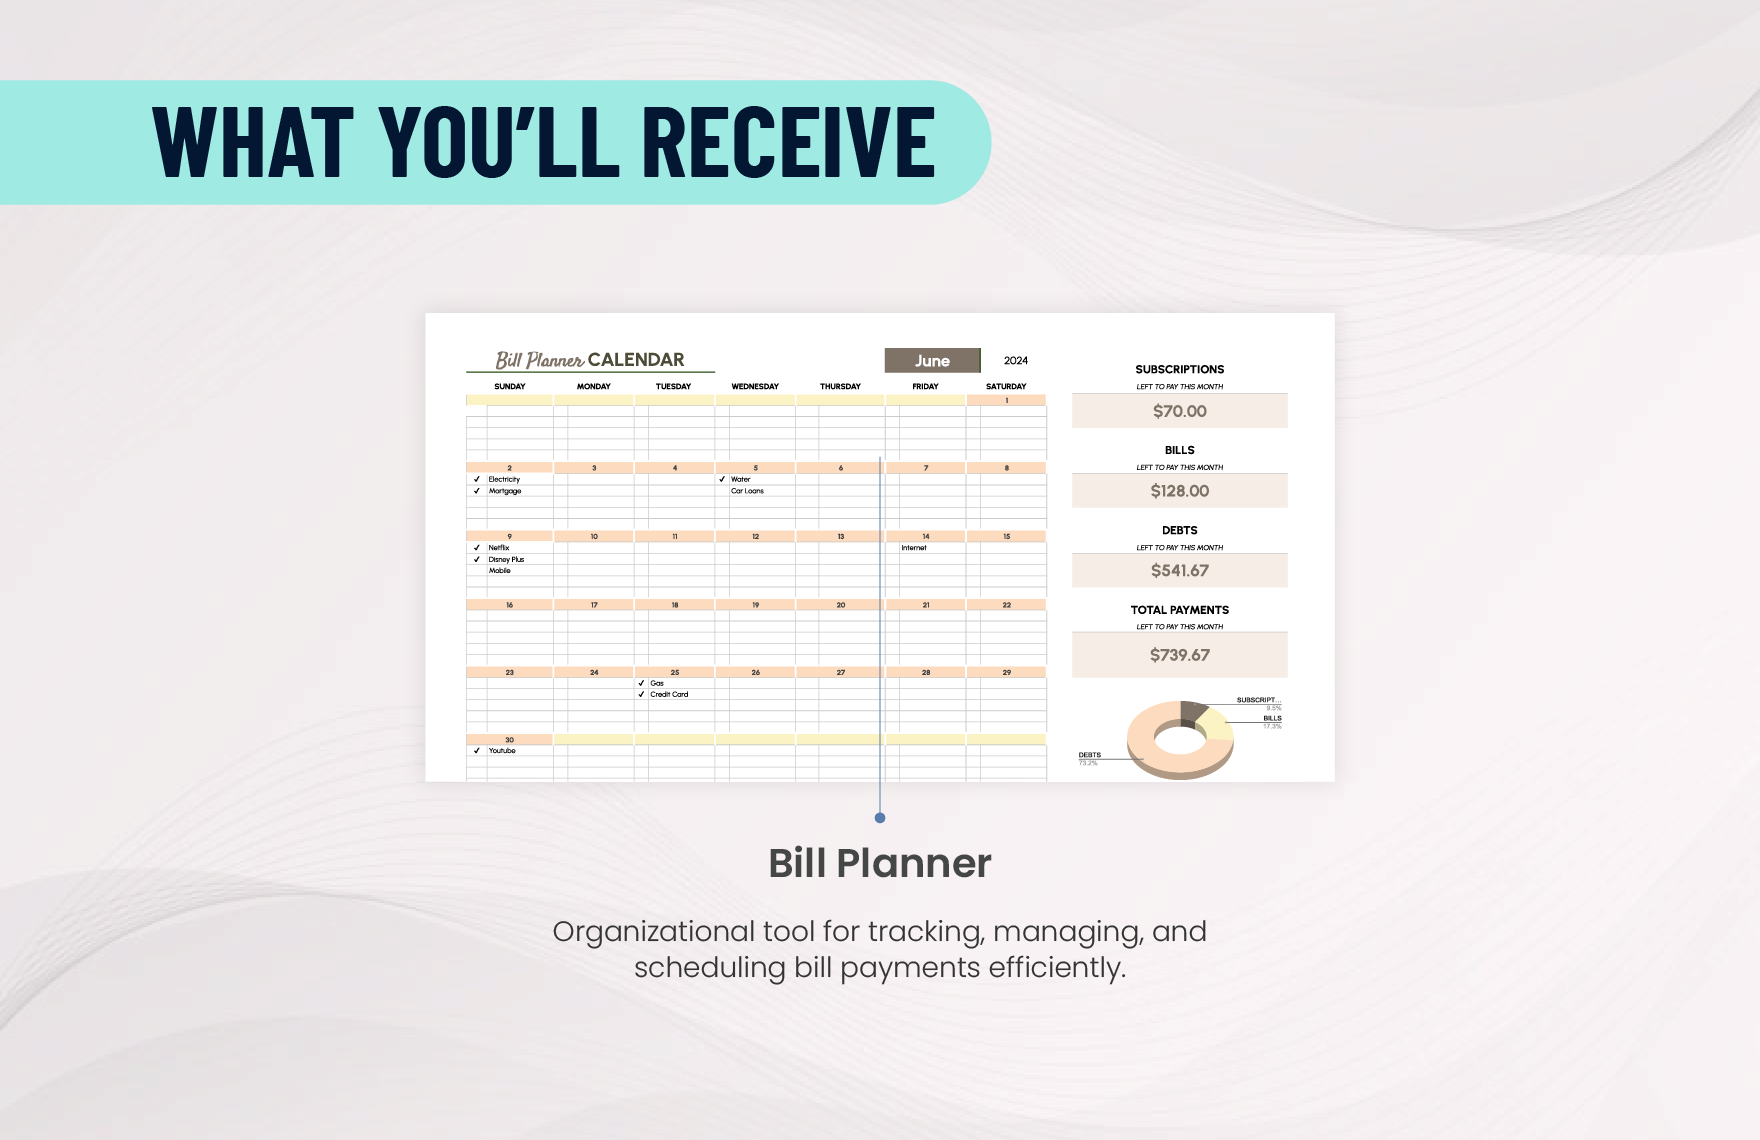 Bill Planner Calendar Template